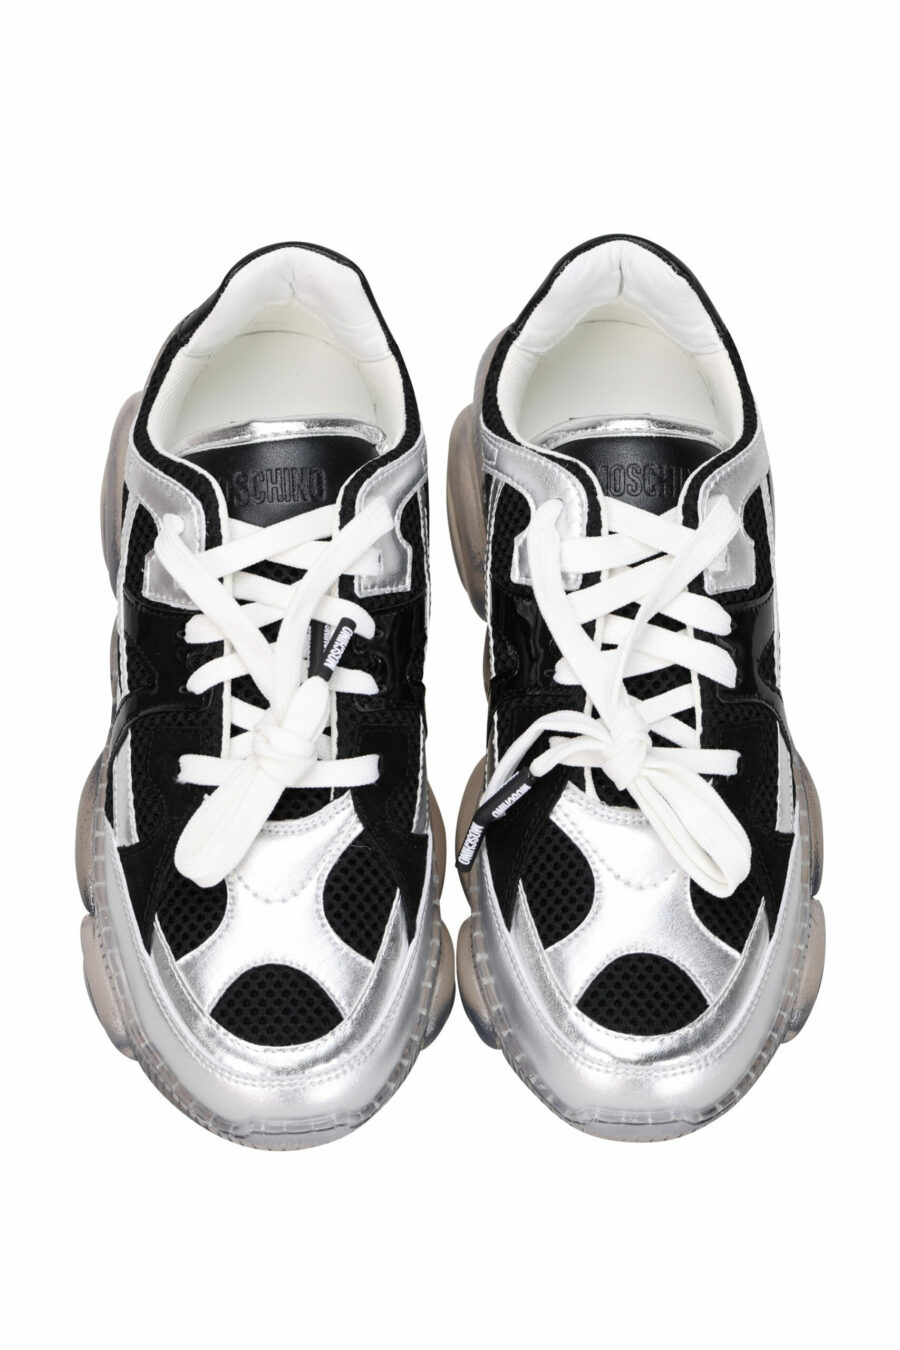 Zapatillas negras mix "orso35" con suela transparente y logo - 8054388533638 3 scaled